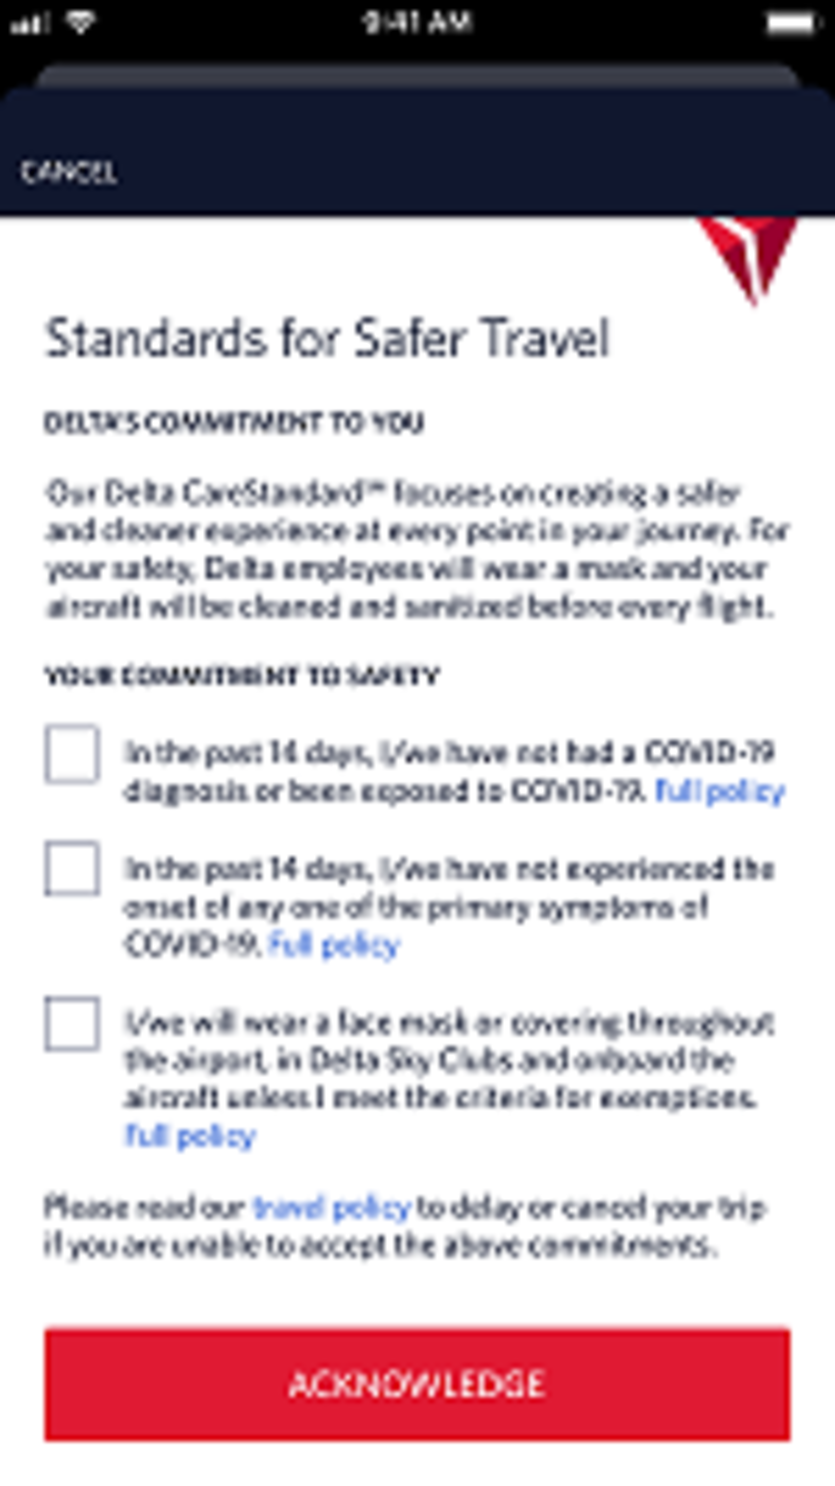 Standards for safer travel